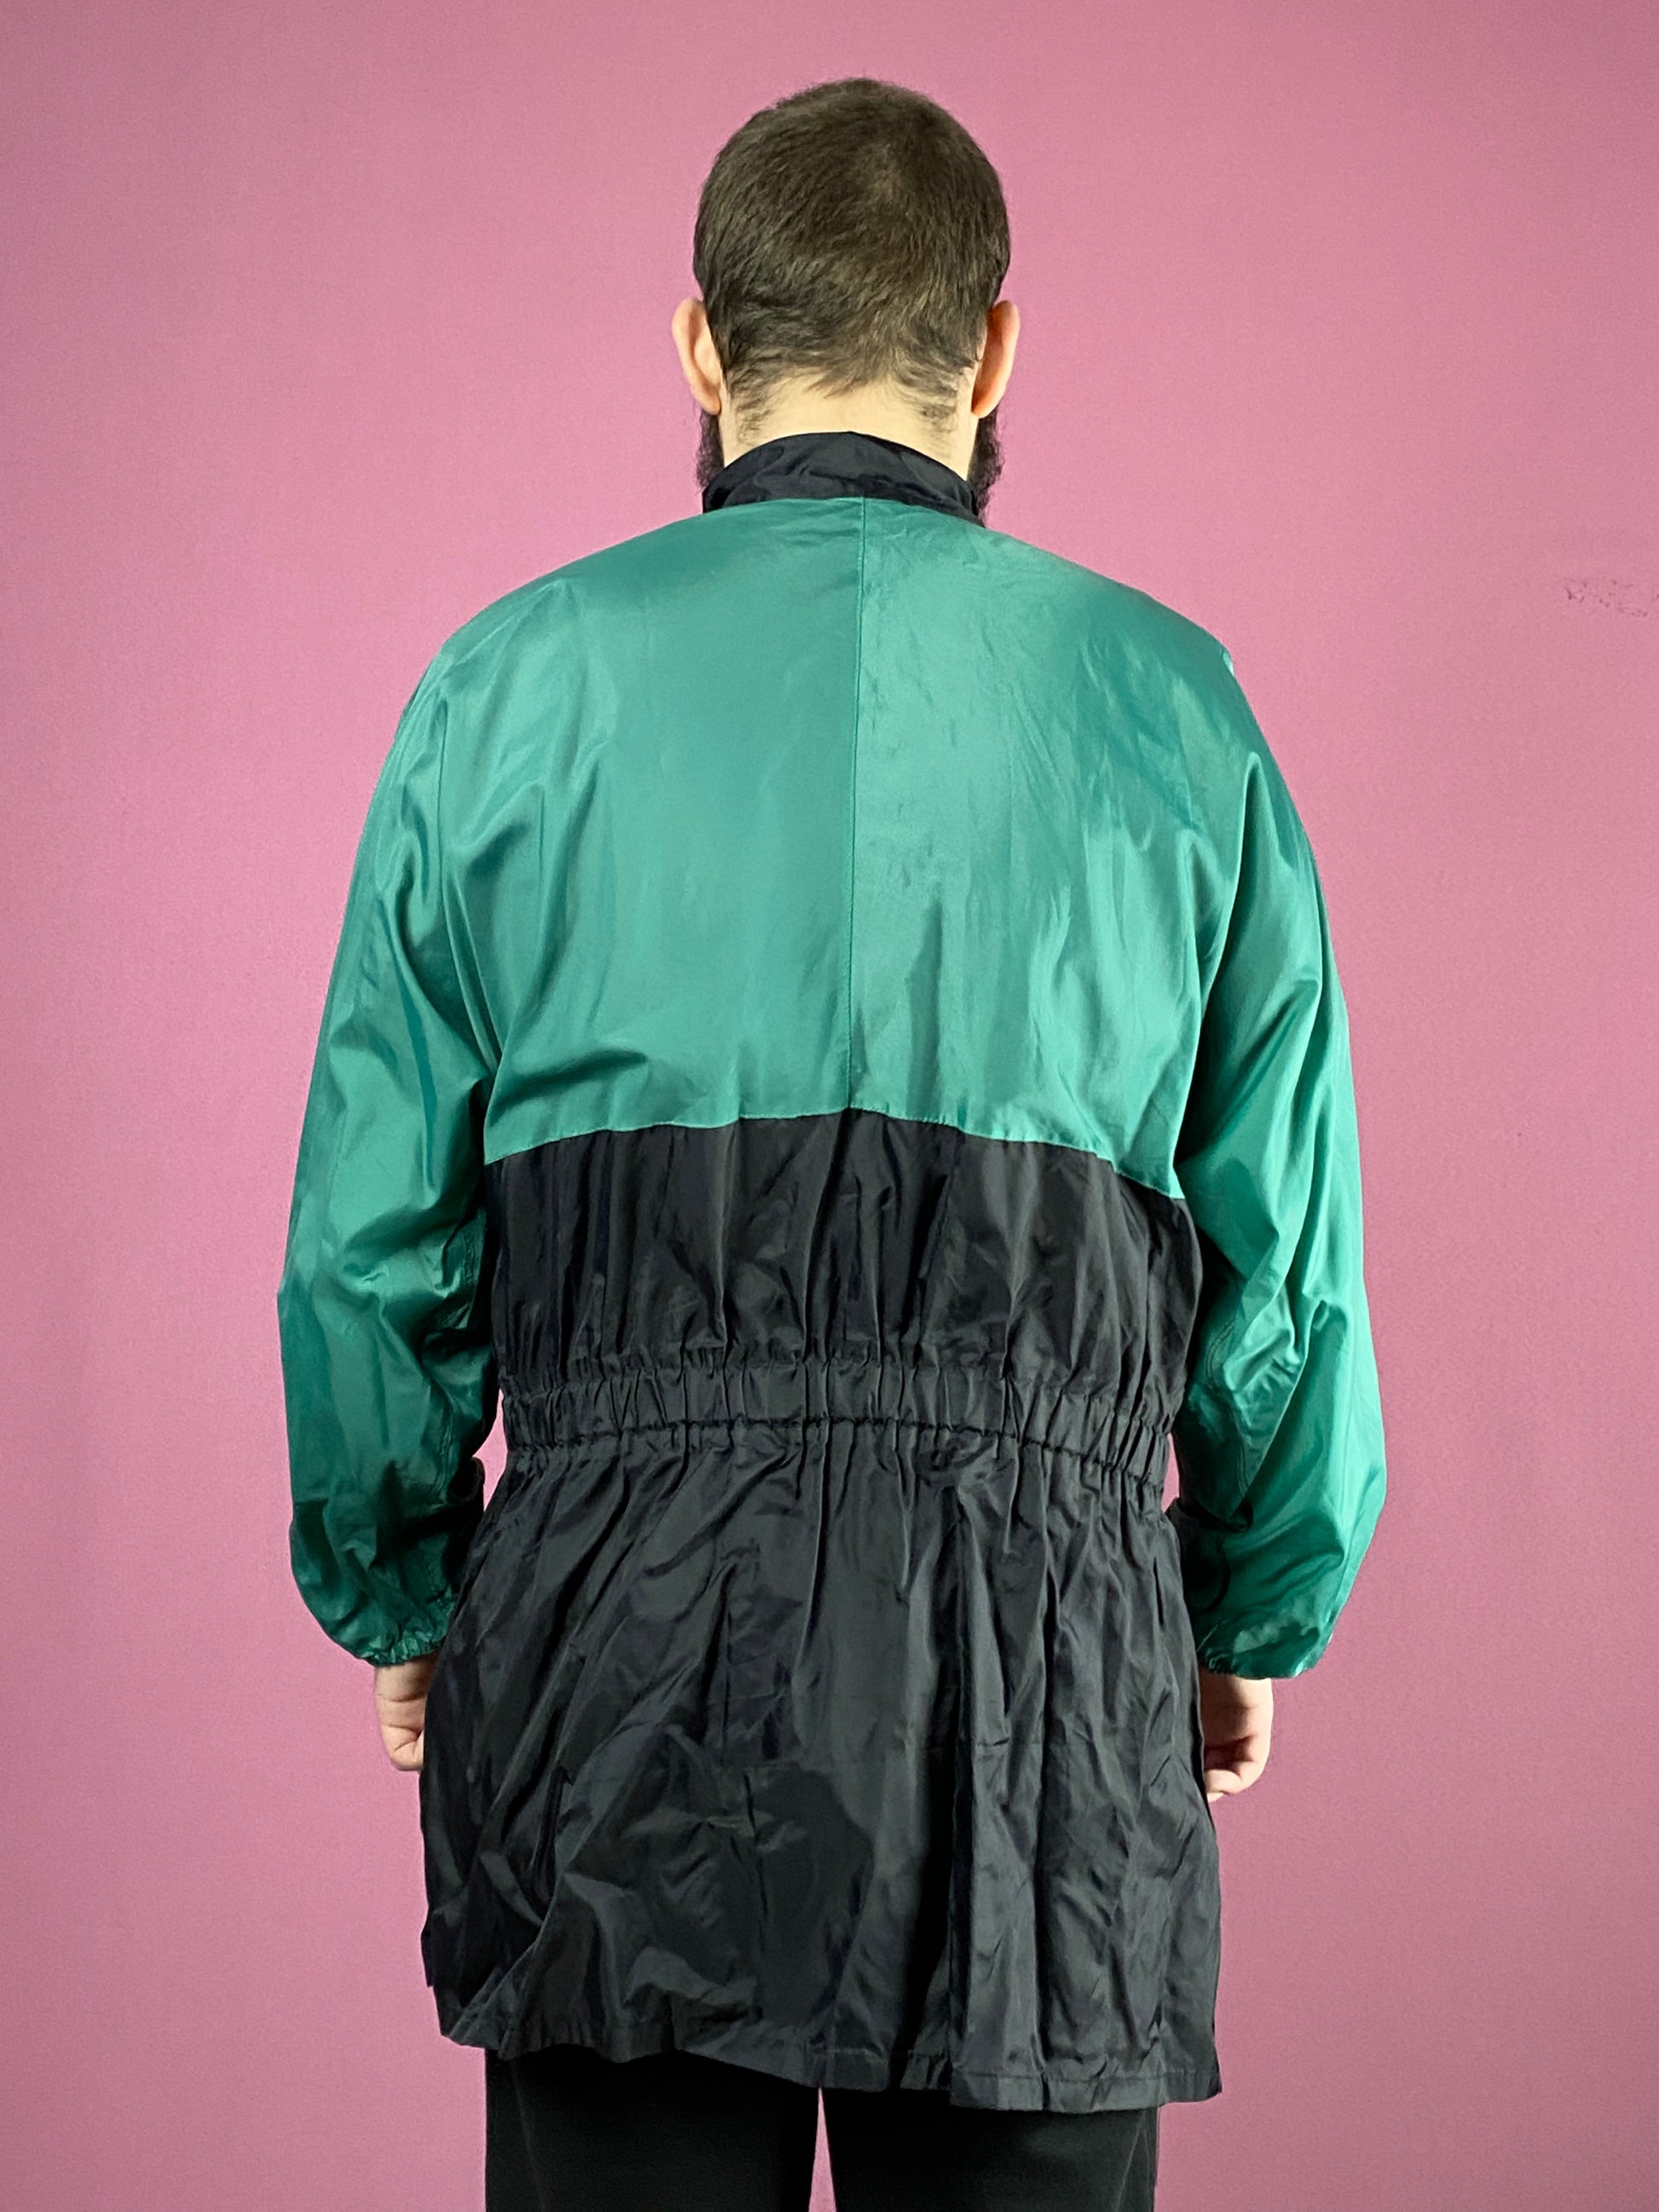 Vintage Men's Raincoat - Large Black & Green Nylon